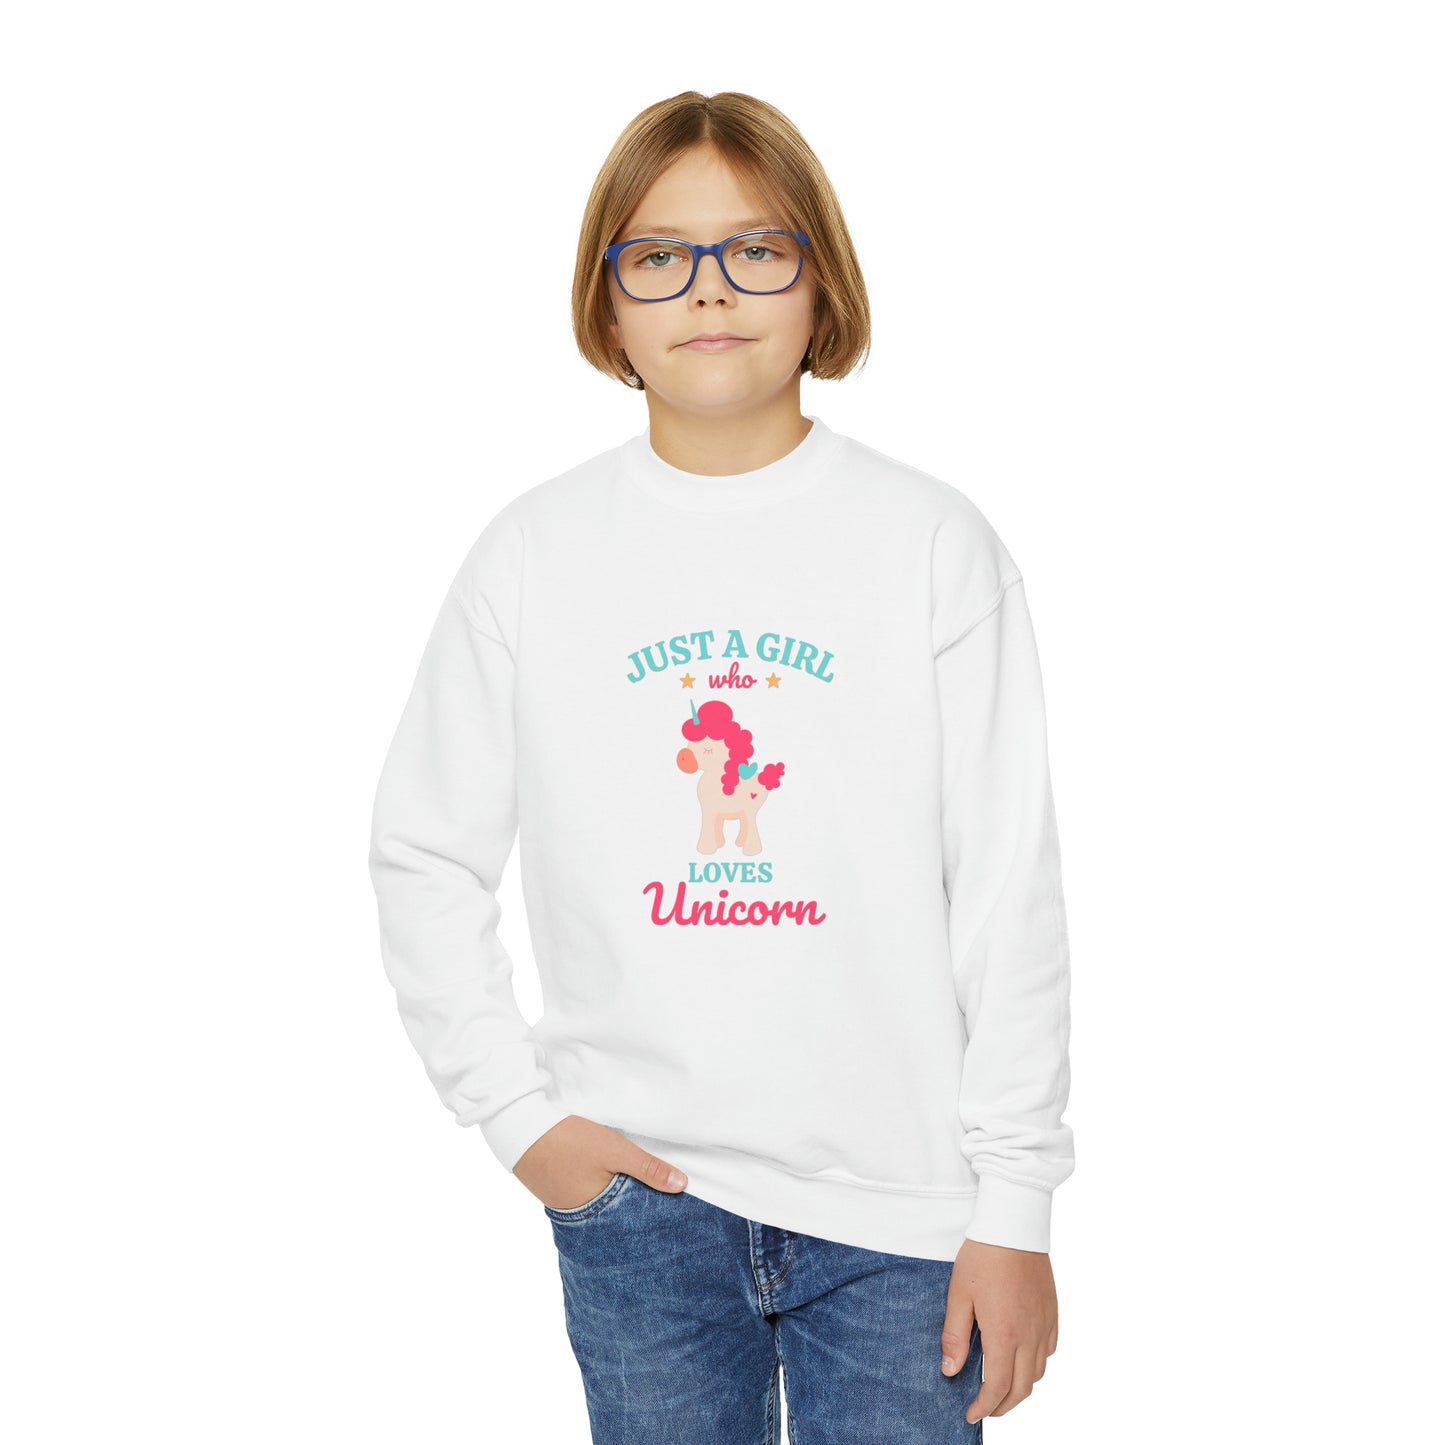 Unicorn Youth Crewneck Sweatshirt